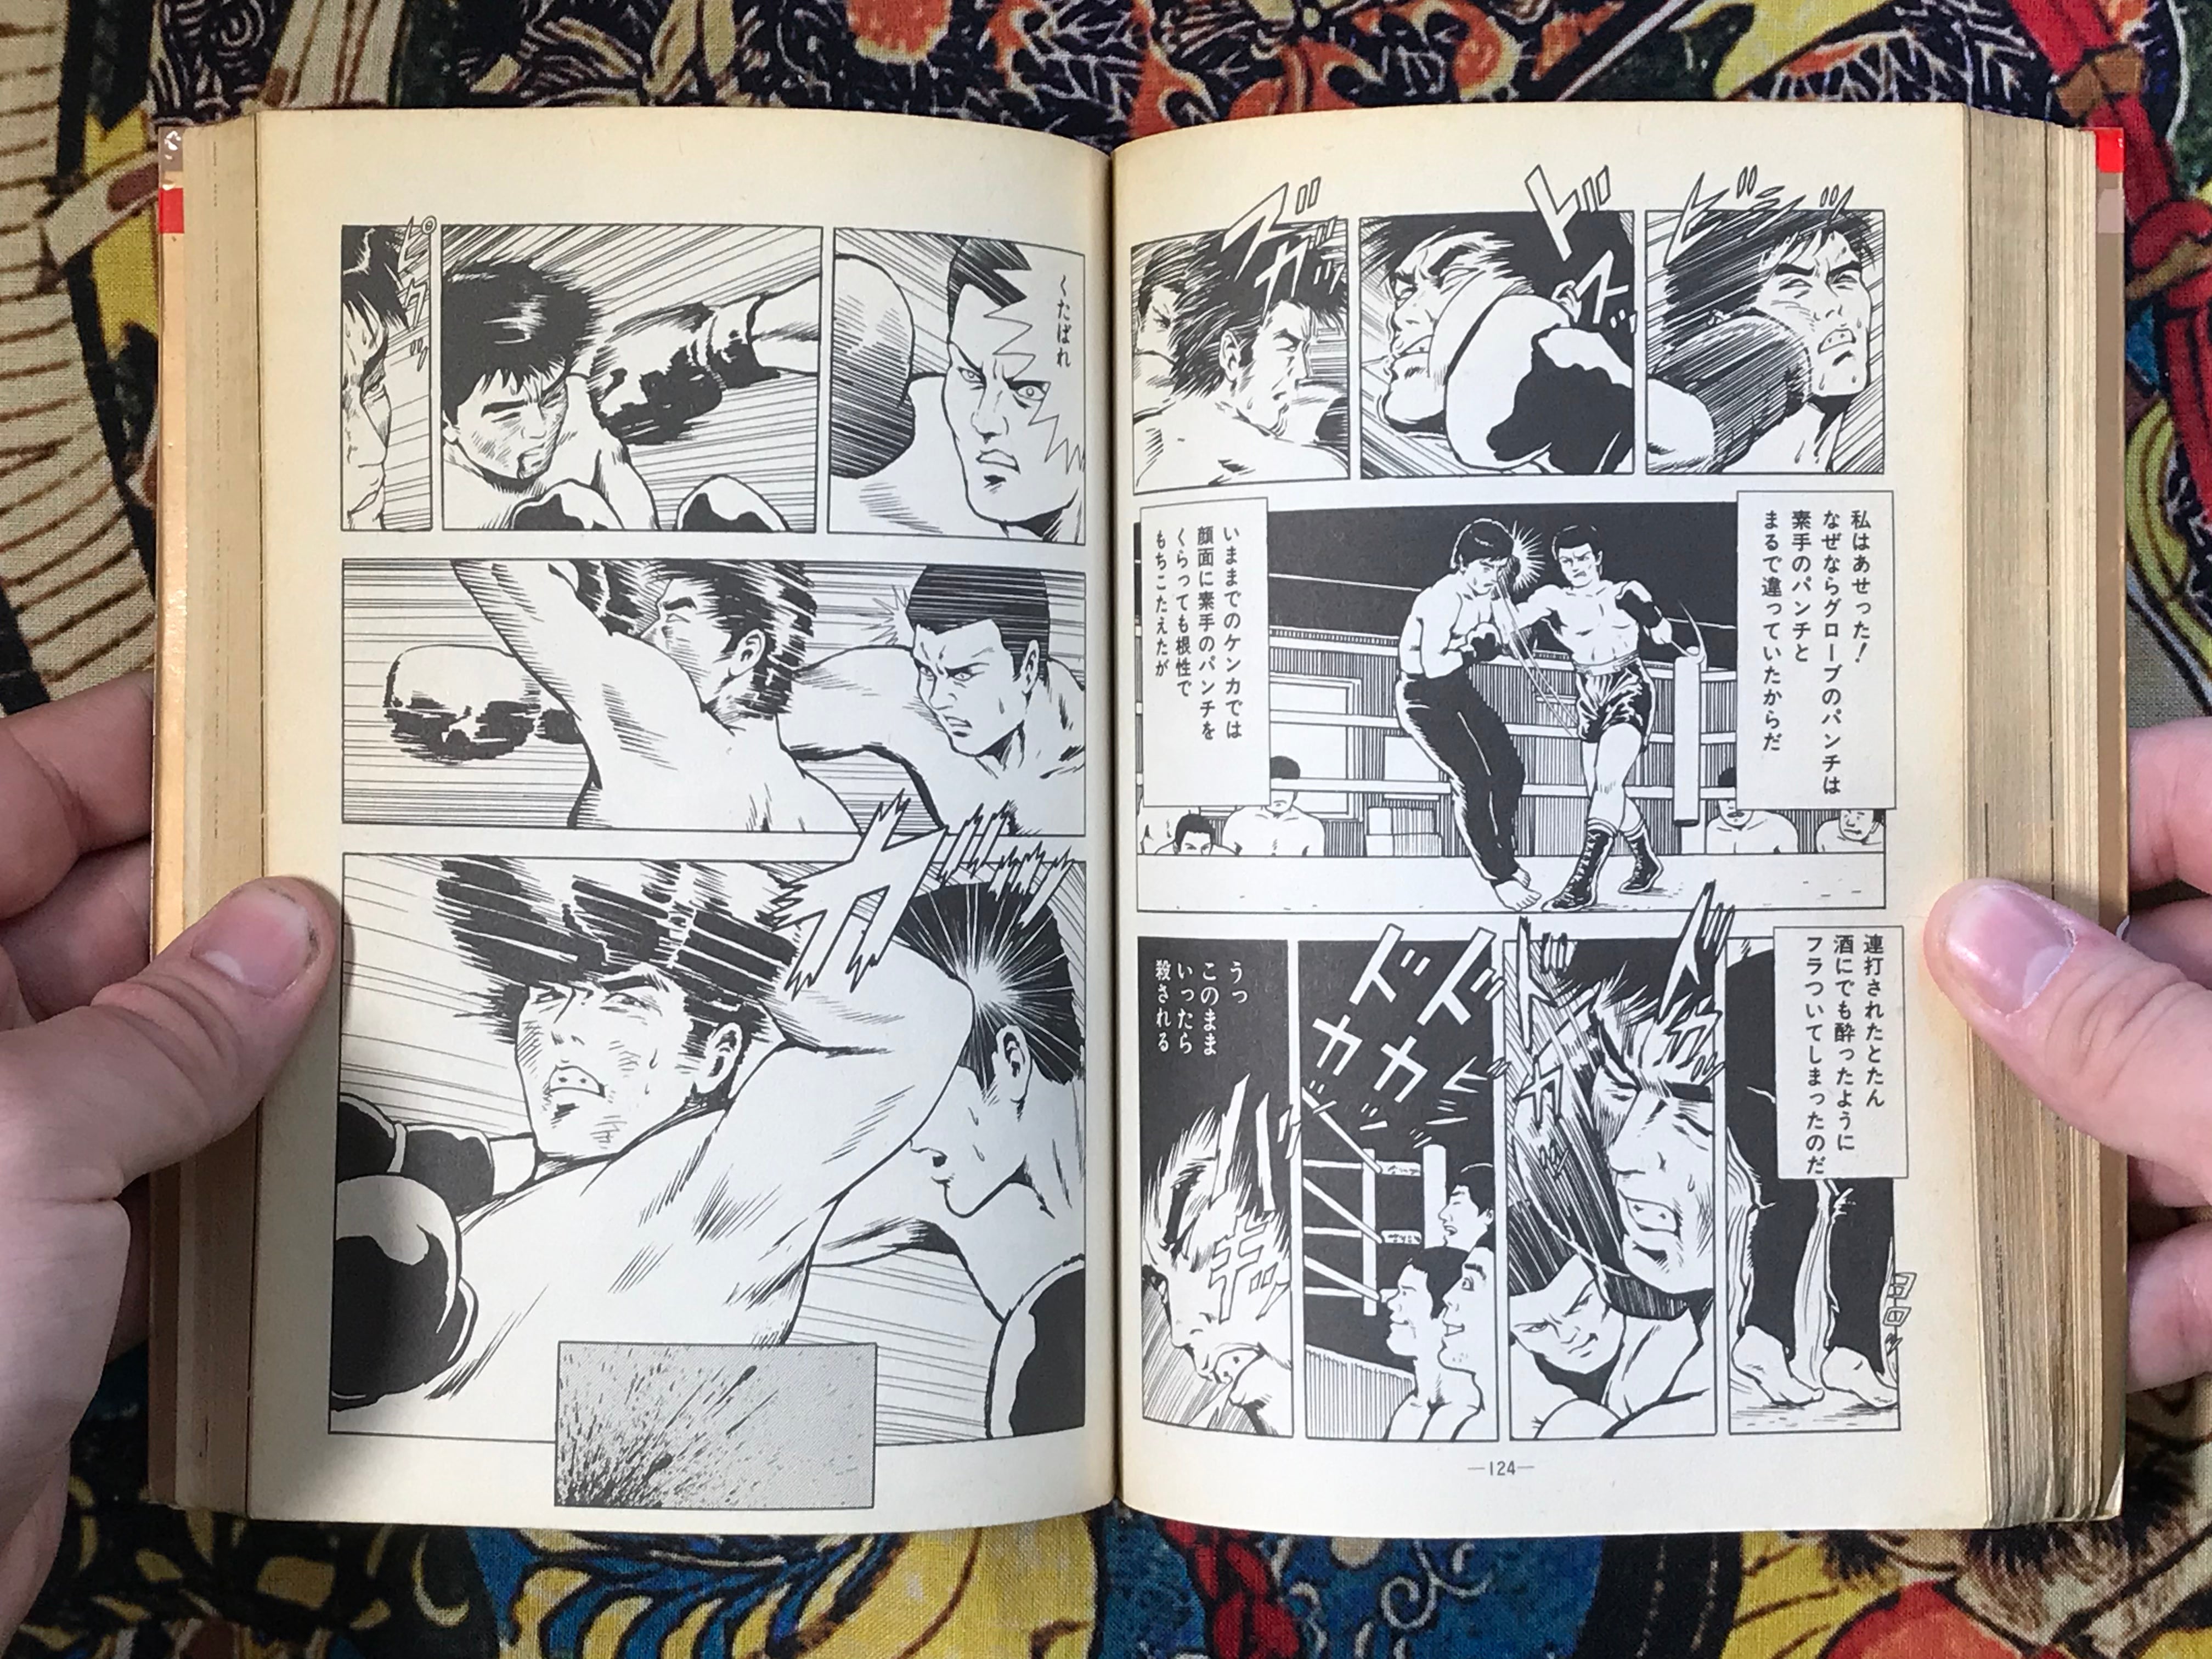 Killer Fist Technique for Koppo Marital Arts illustrated by Kaze Shinobu (1988)